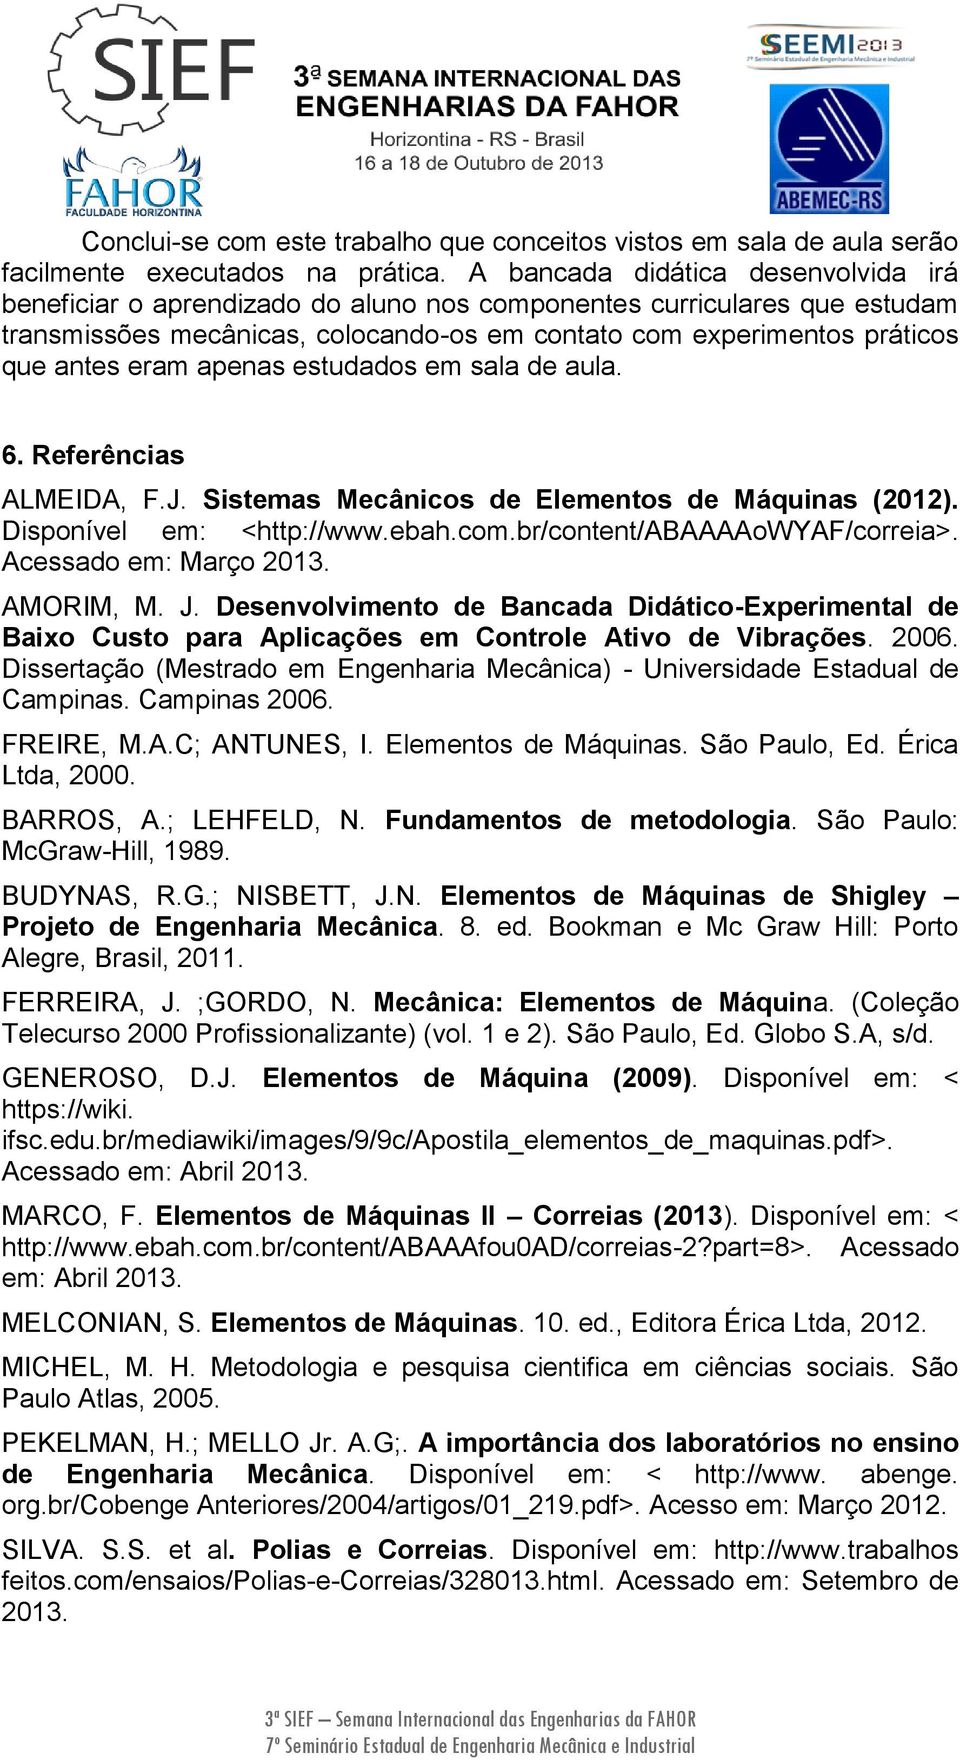 apenas estudados em sala de aula. 6. Referências ALMEIDA, F.J. Sistemas Mecânicos de Elementos de Máquinas (2012). Disponível em: <http://www.ebah.com.br/content/abaaaaowyaf/correia>.